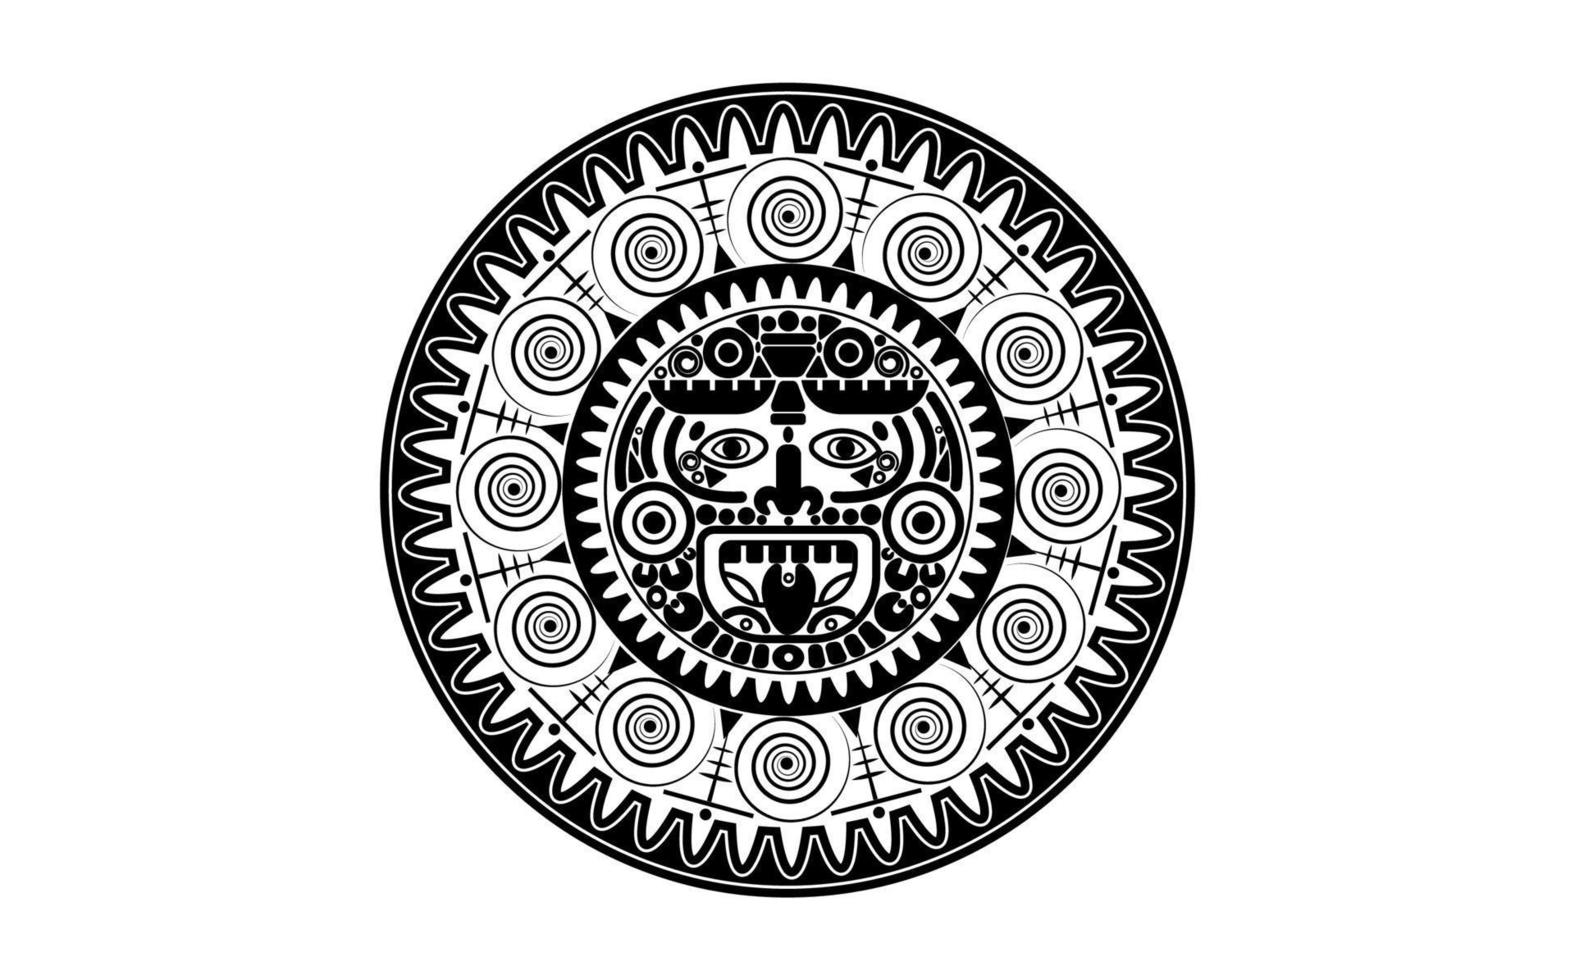 helig maya-solgud, aztekisk hjulkalender, mayasymboler etnisk mask, svart tatuering rund ramkant gammal logotypikon vektorillustration isolerad på vit bakgrund vektor